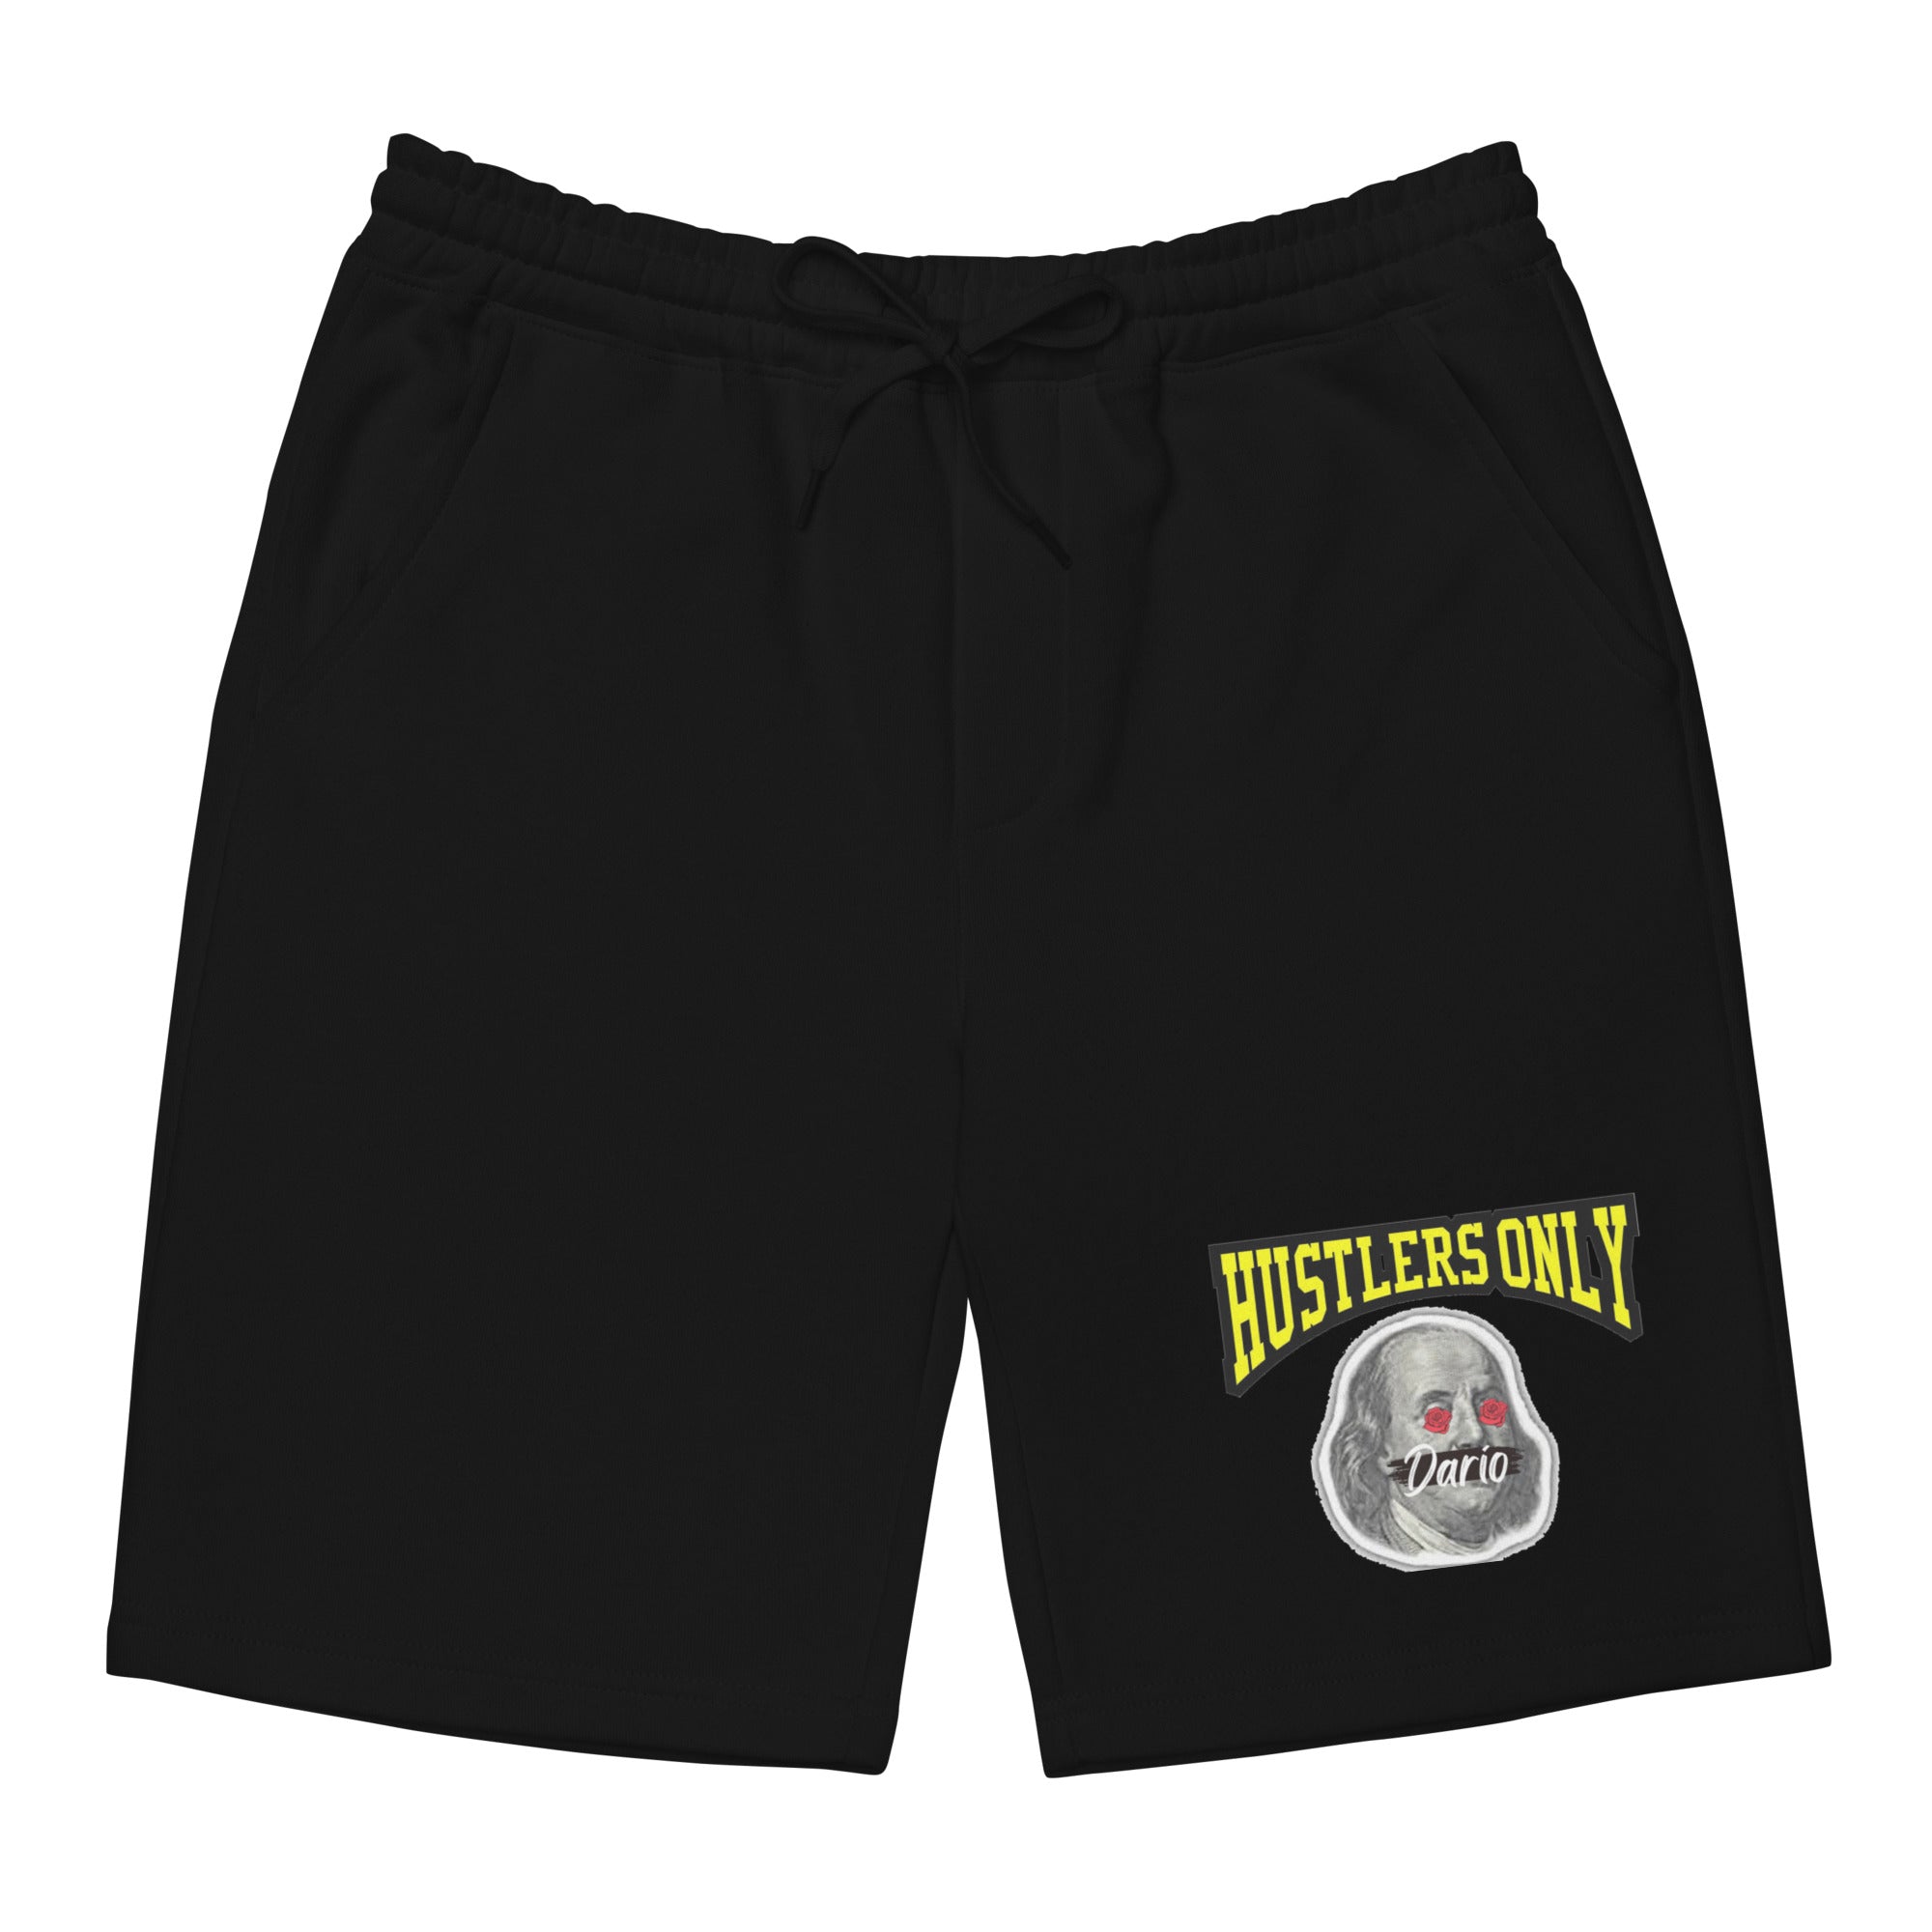 Men's Hustler$ Only Gold shorts